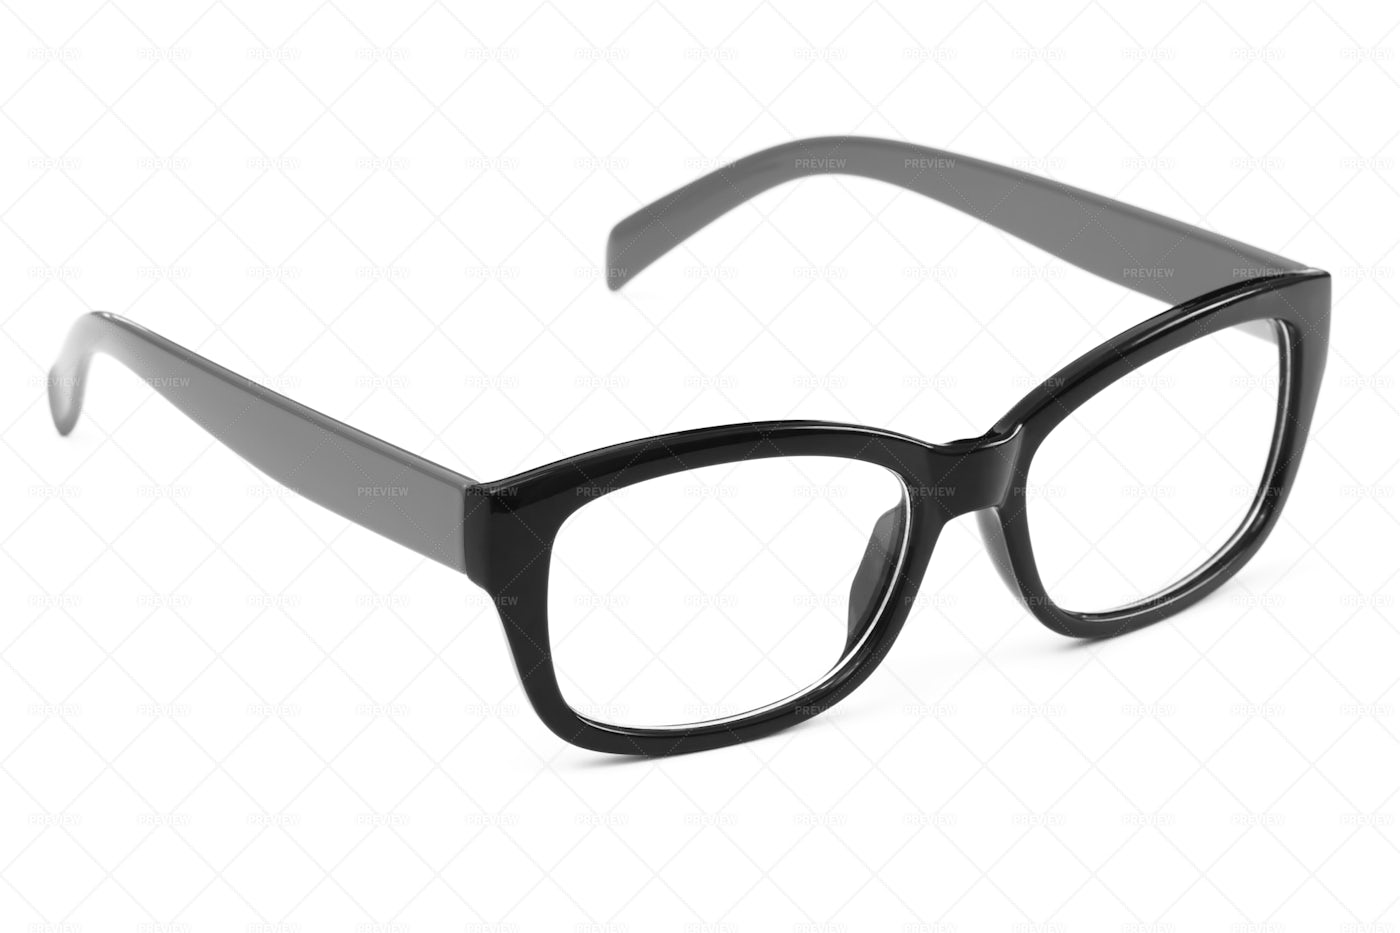 Modern Glasses Frame: Stock Photos